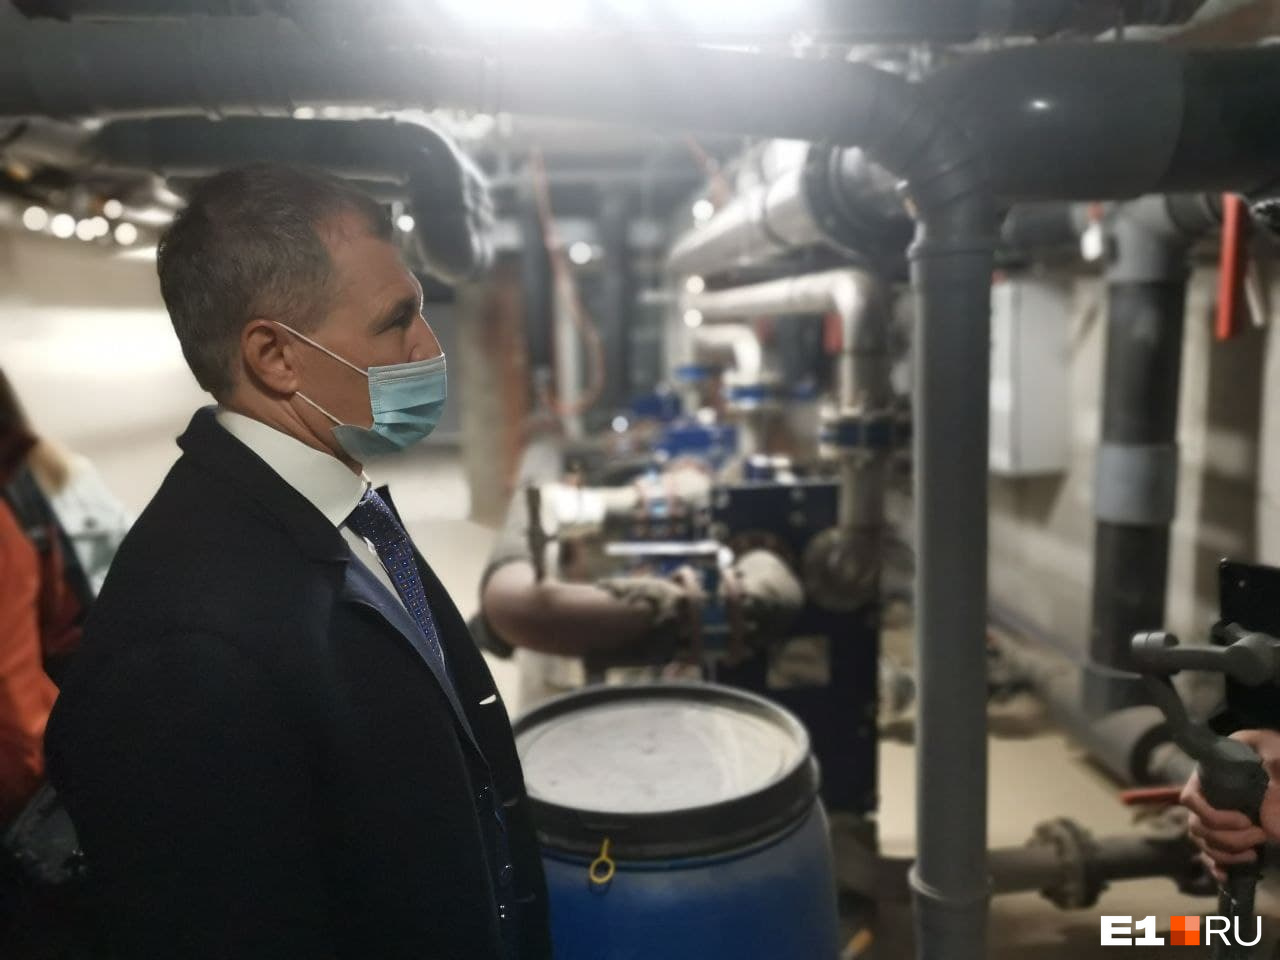 Спикер Игорь Володин теперь знает тонкости системы водоочистки в бассейне «Баден-Бадена»